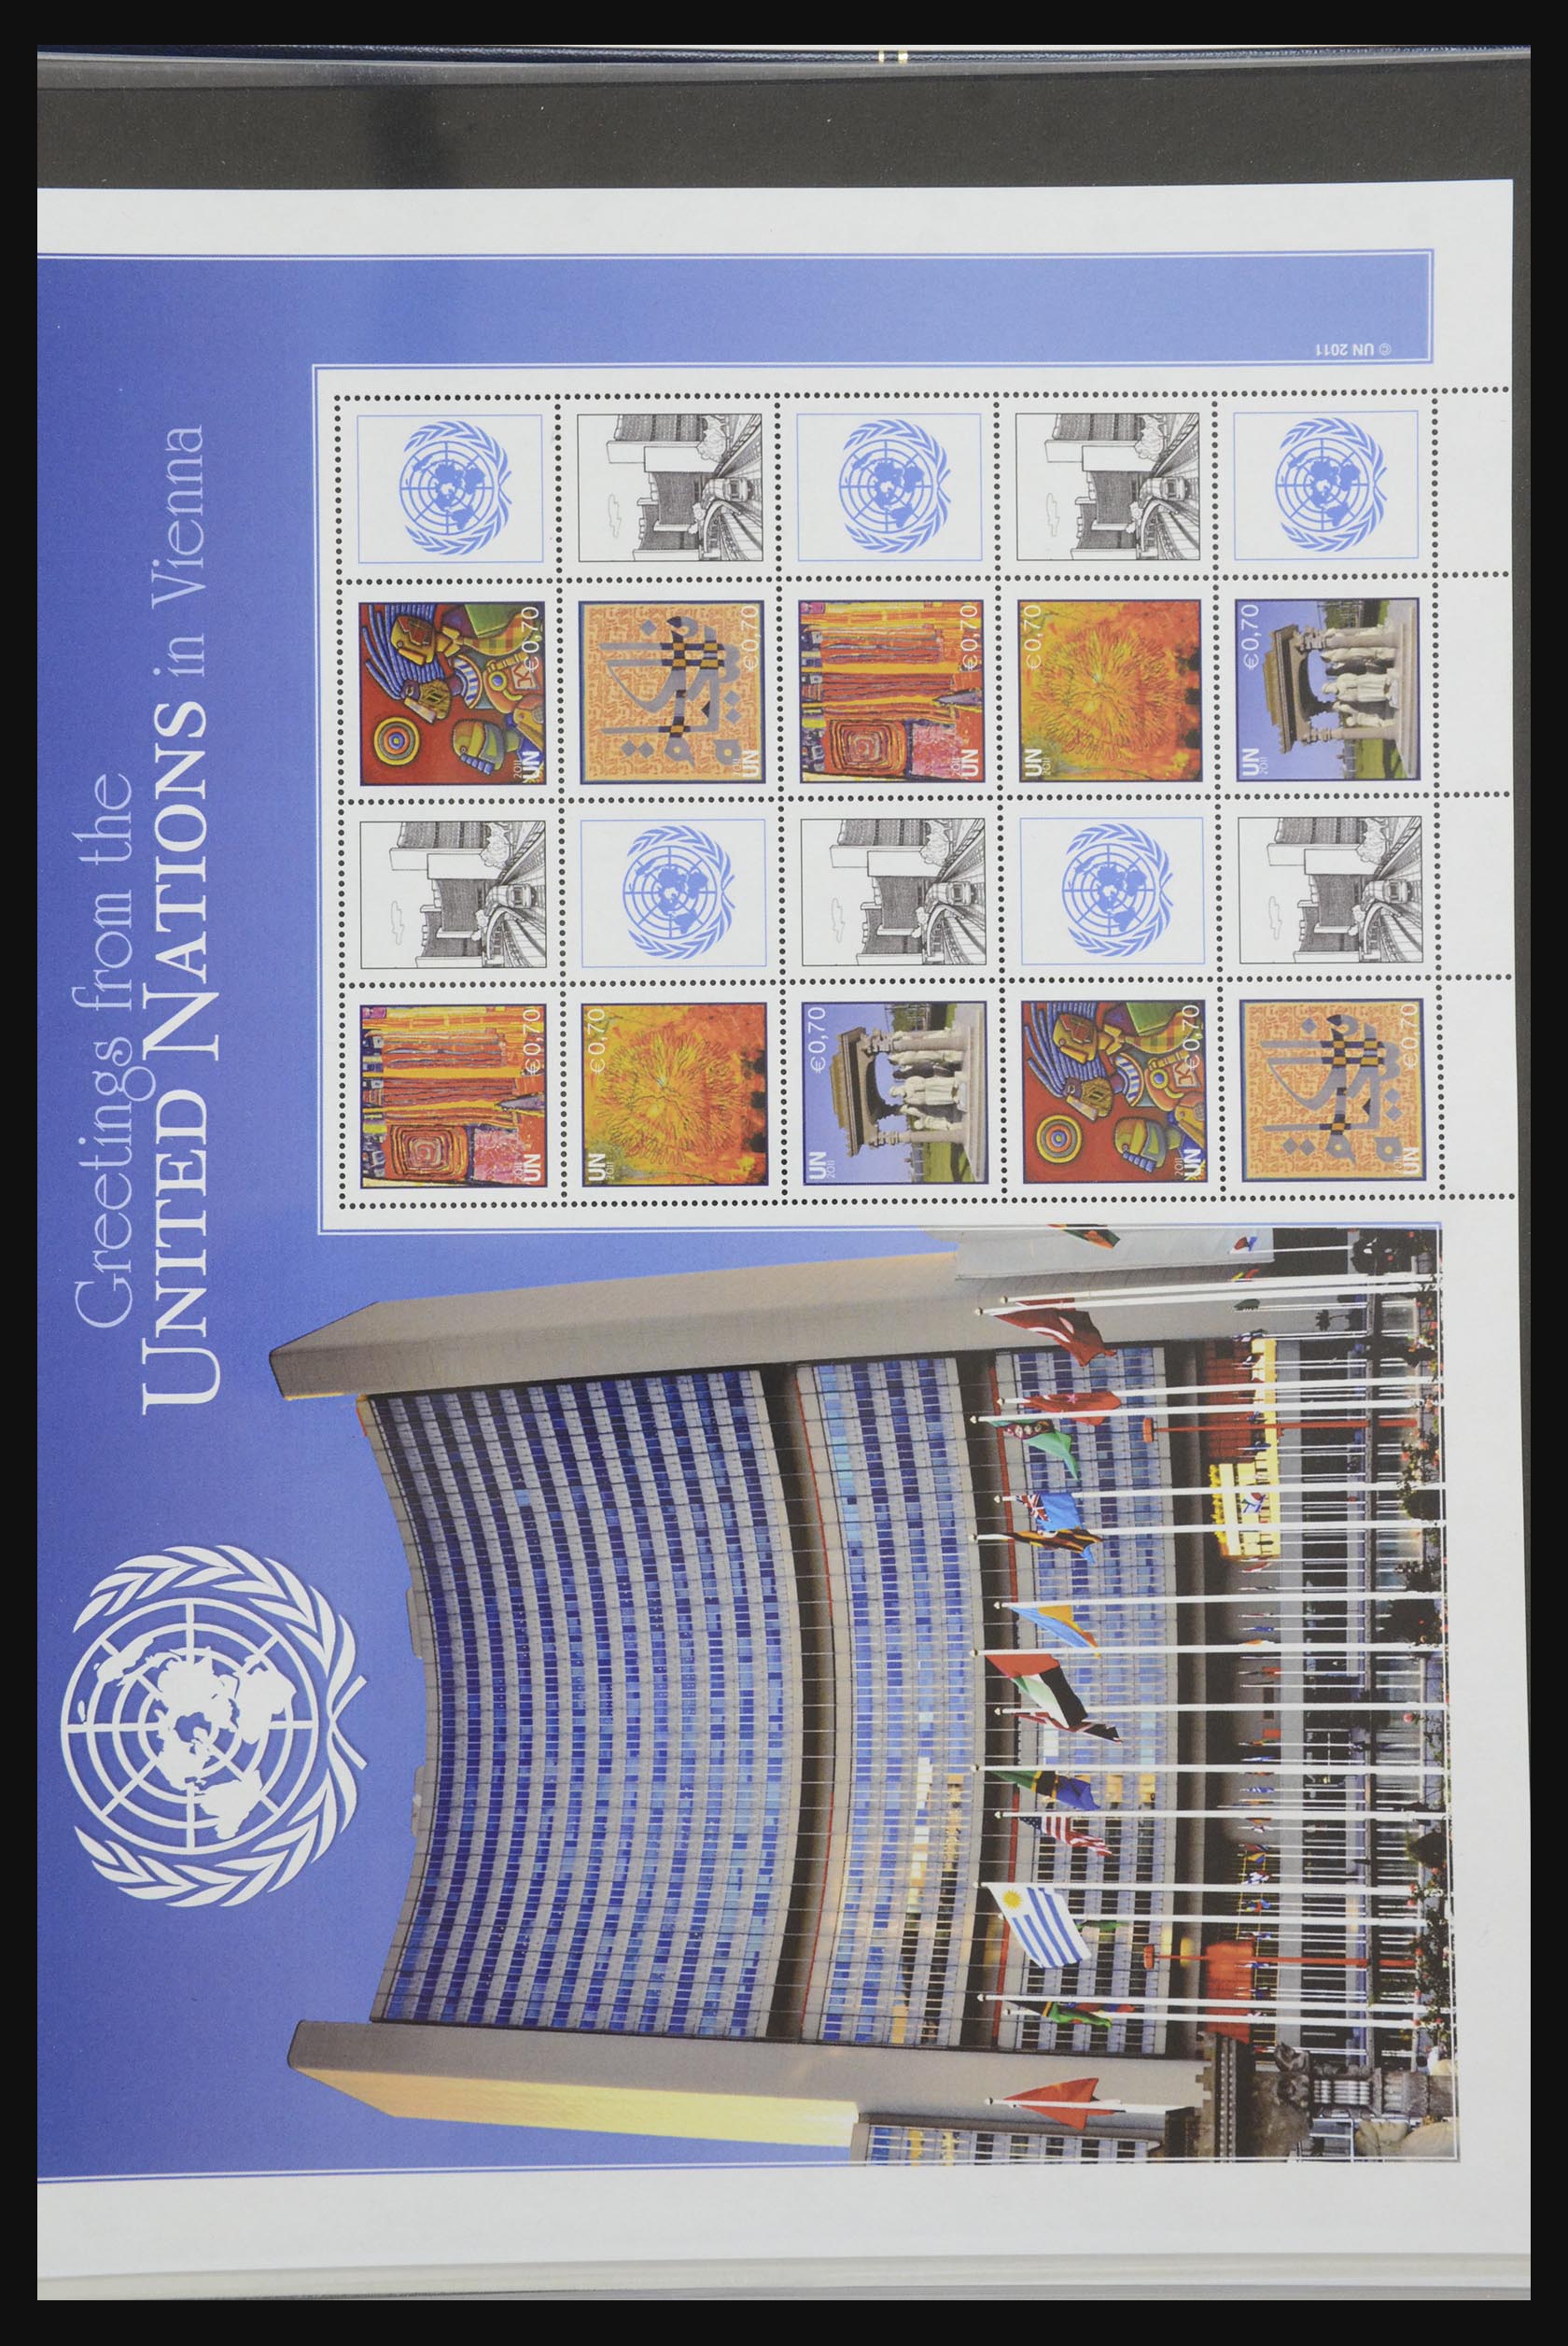 32025 086 - 32025 Verenigde Naties Wenen 1979-2013.